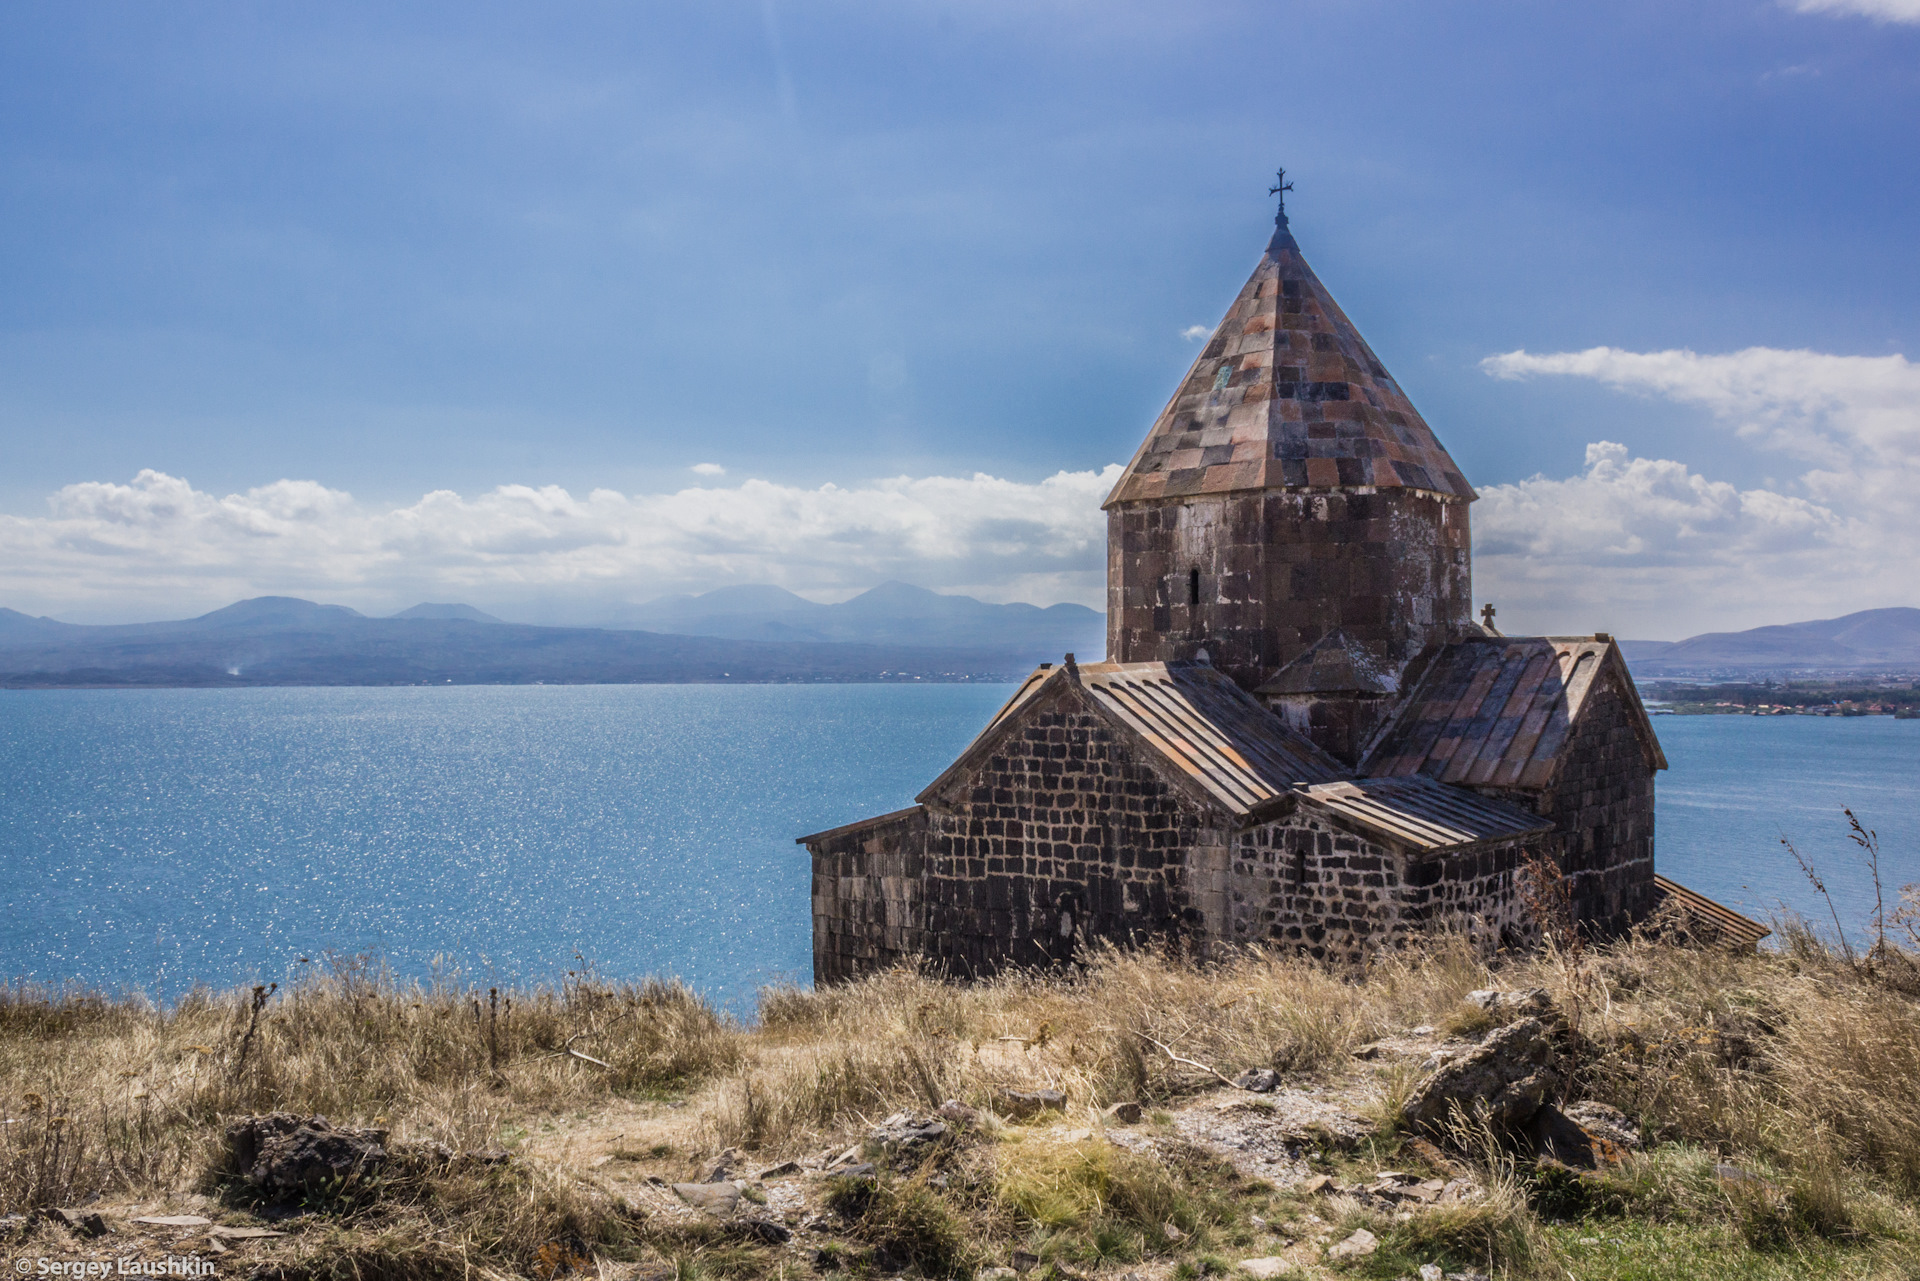 Кредит севан. Айраванк монастырь Армения. Озеро Севан Севанаванк. Монастырь на озере Севан. Севан храм Айраванк.